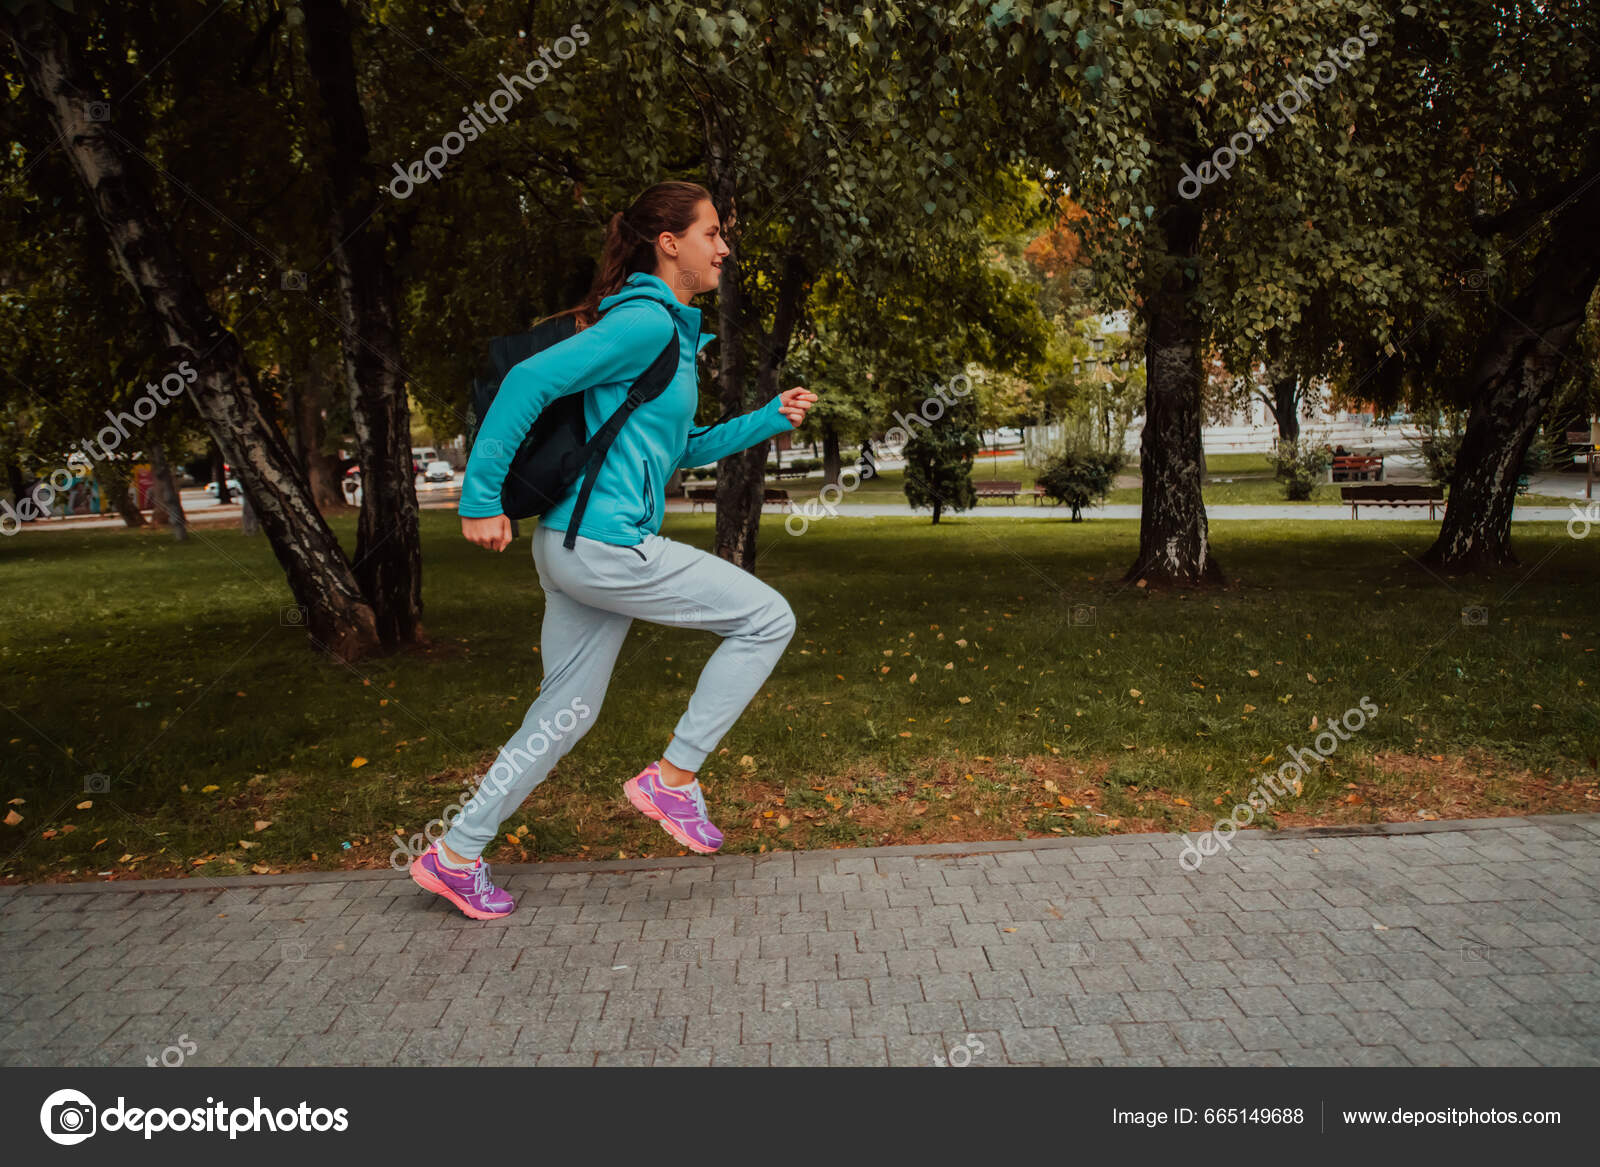 https://st5.depositphotos.com/1003697/66514/i/1600/depositphotos_665149688-stock-photo-women-sports-clothes-running-modern.jpg